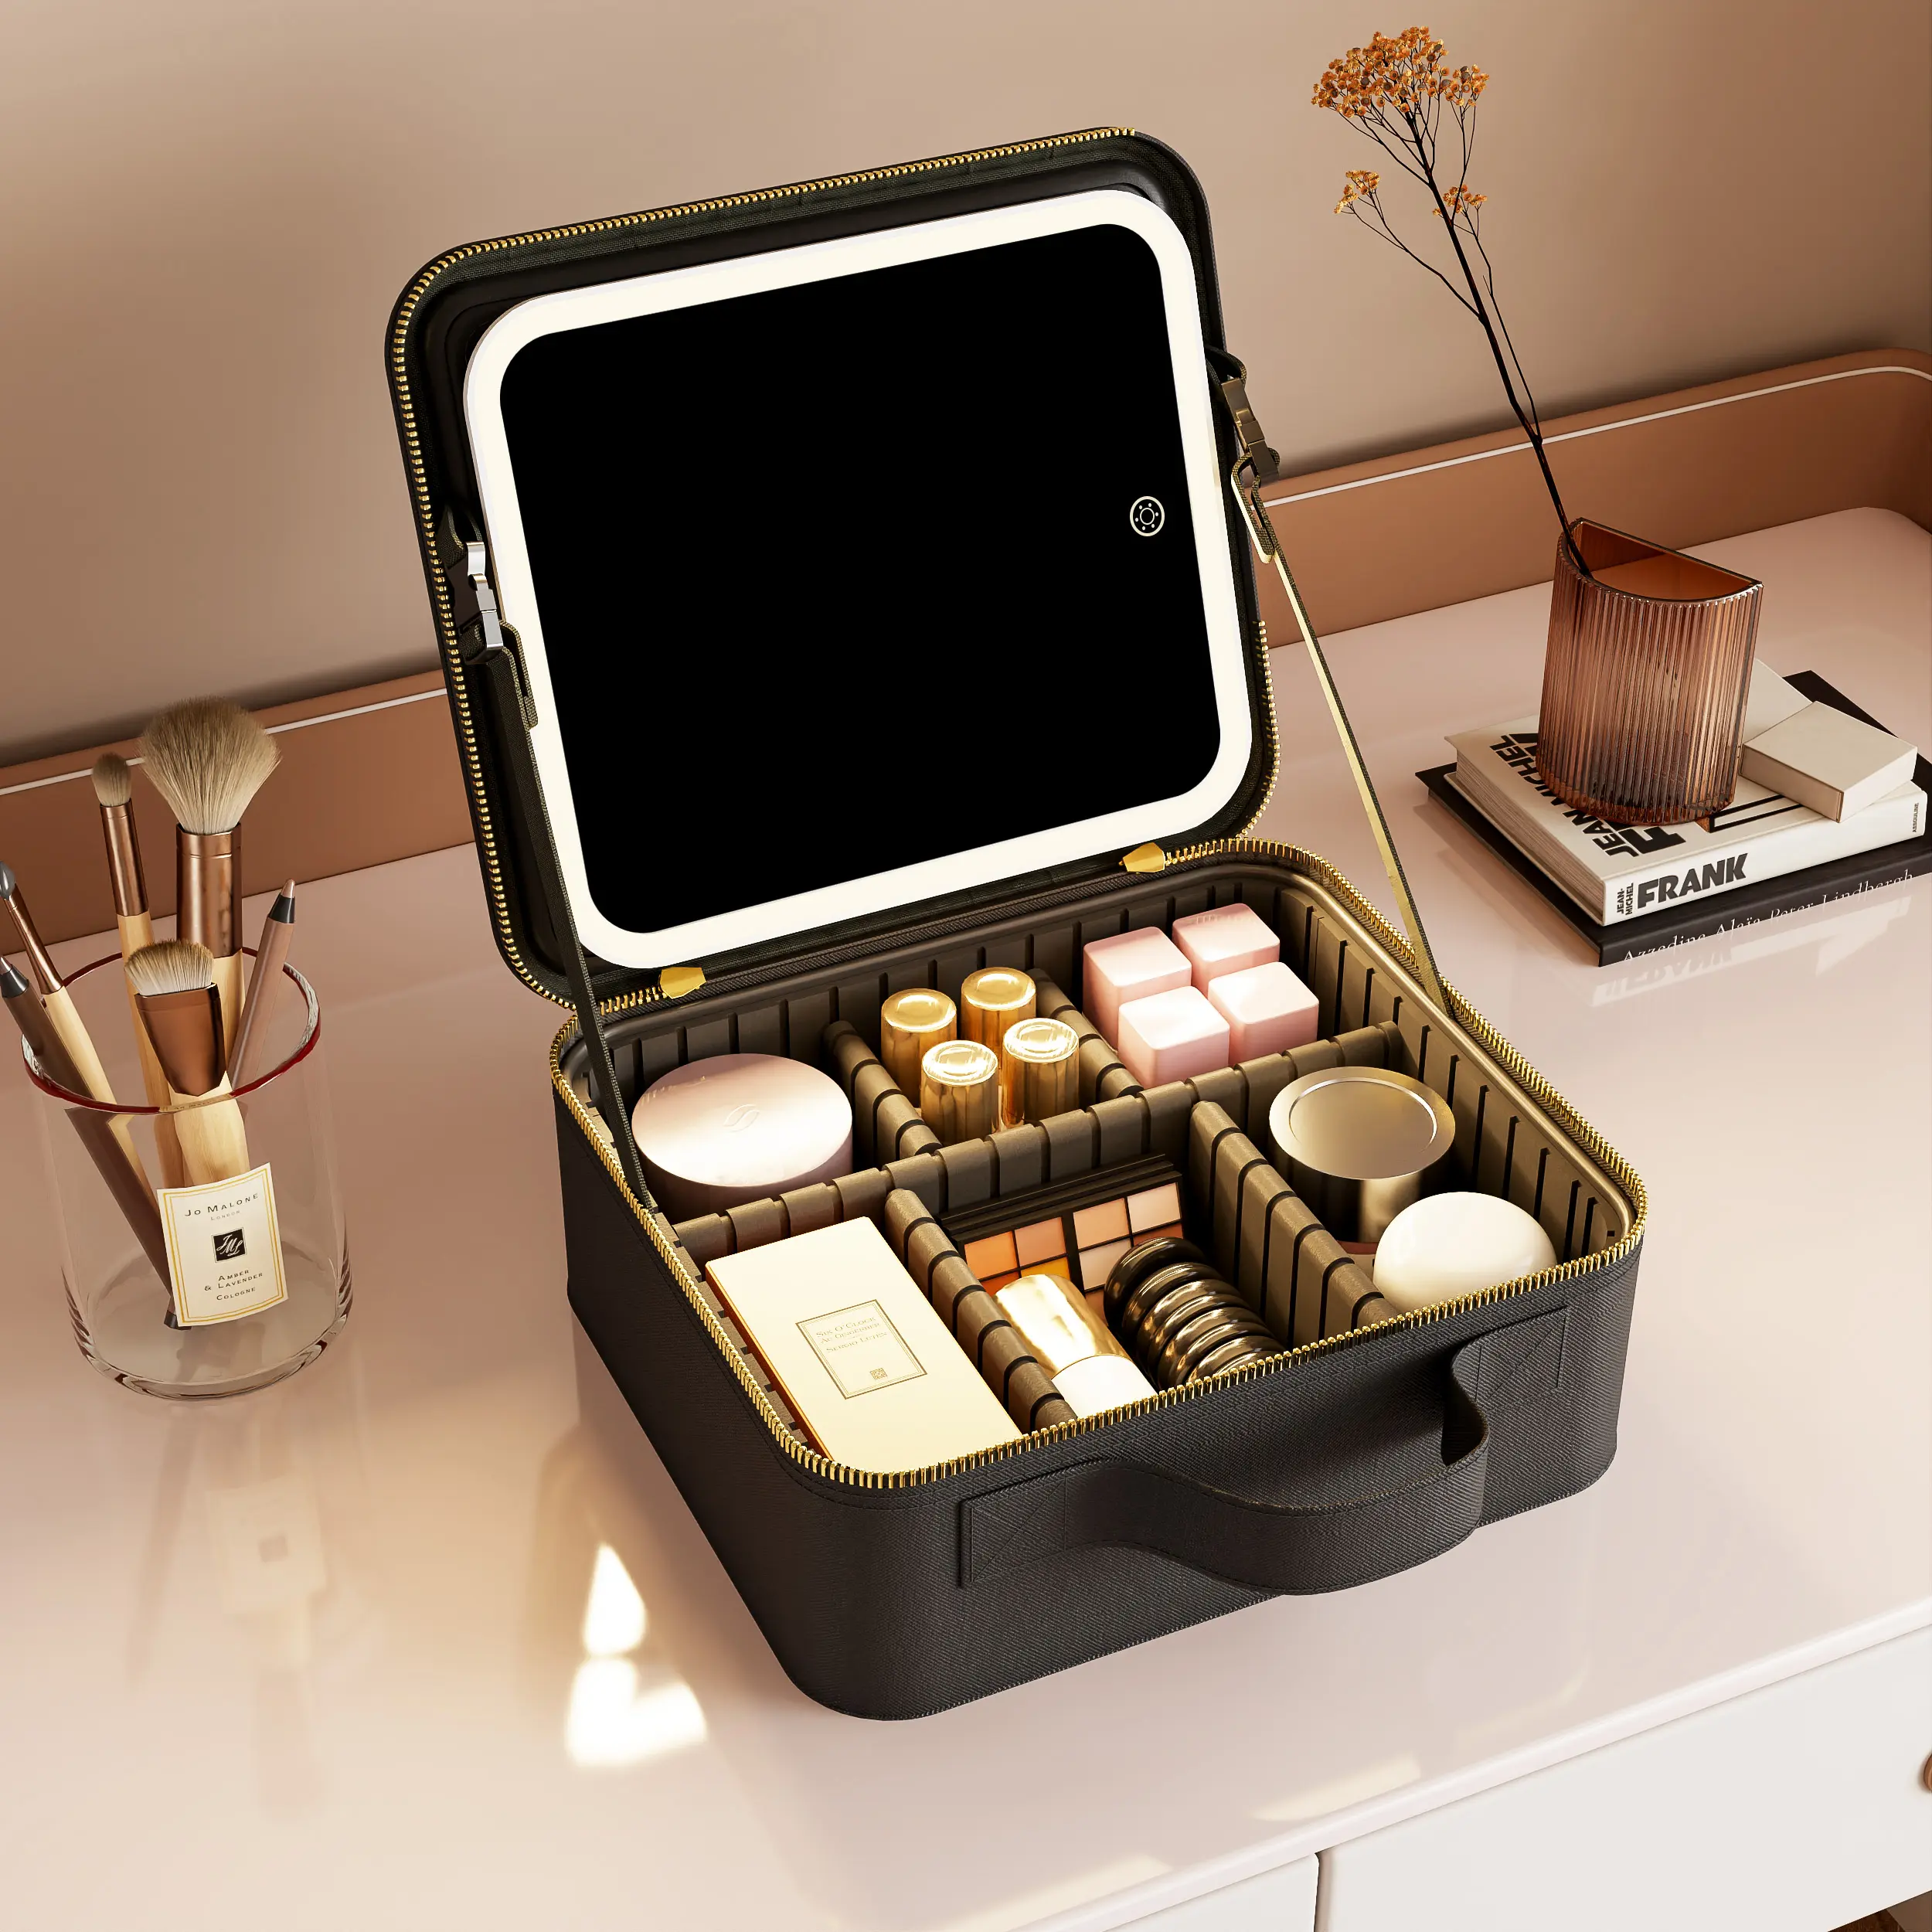 Reise tragbare Make-up Organizer Aufbewahrung sbox Fall abnehmbare LED Make-up-Tasche mit Leucht spiegel